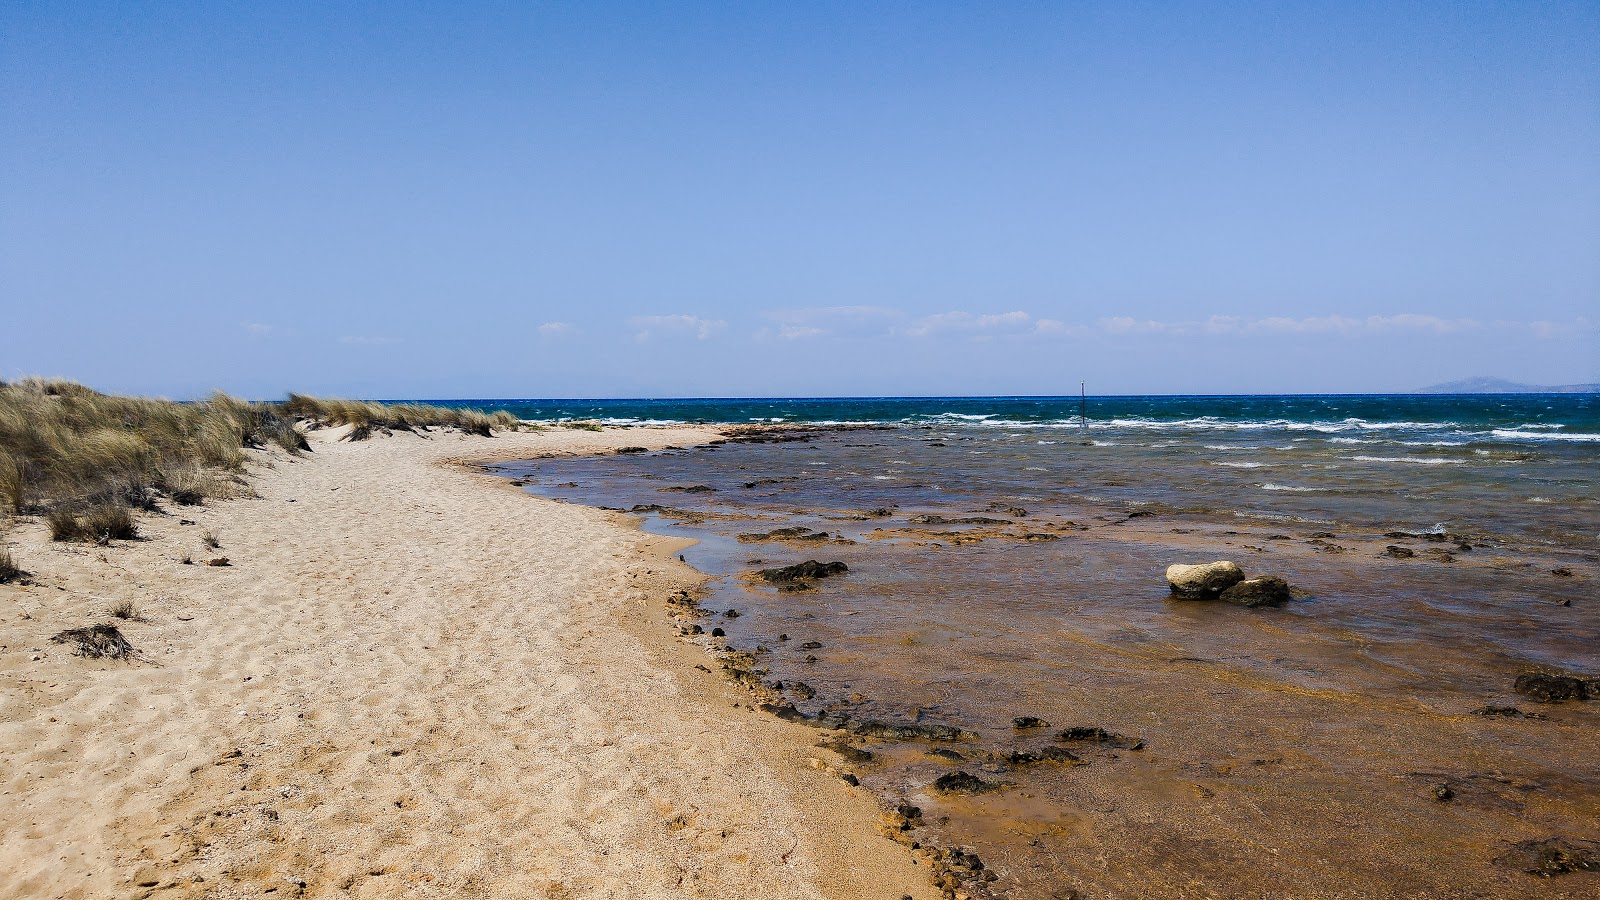 Kalogeras beach'in fotoğrafı parlak kum ve kayalar yüzey ile